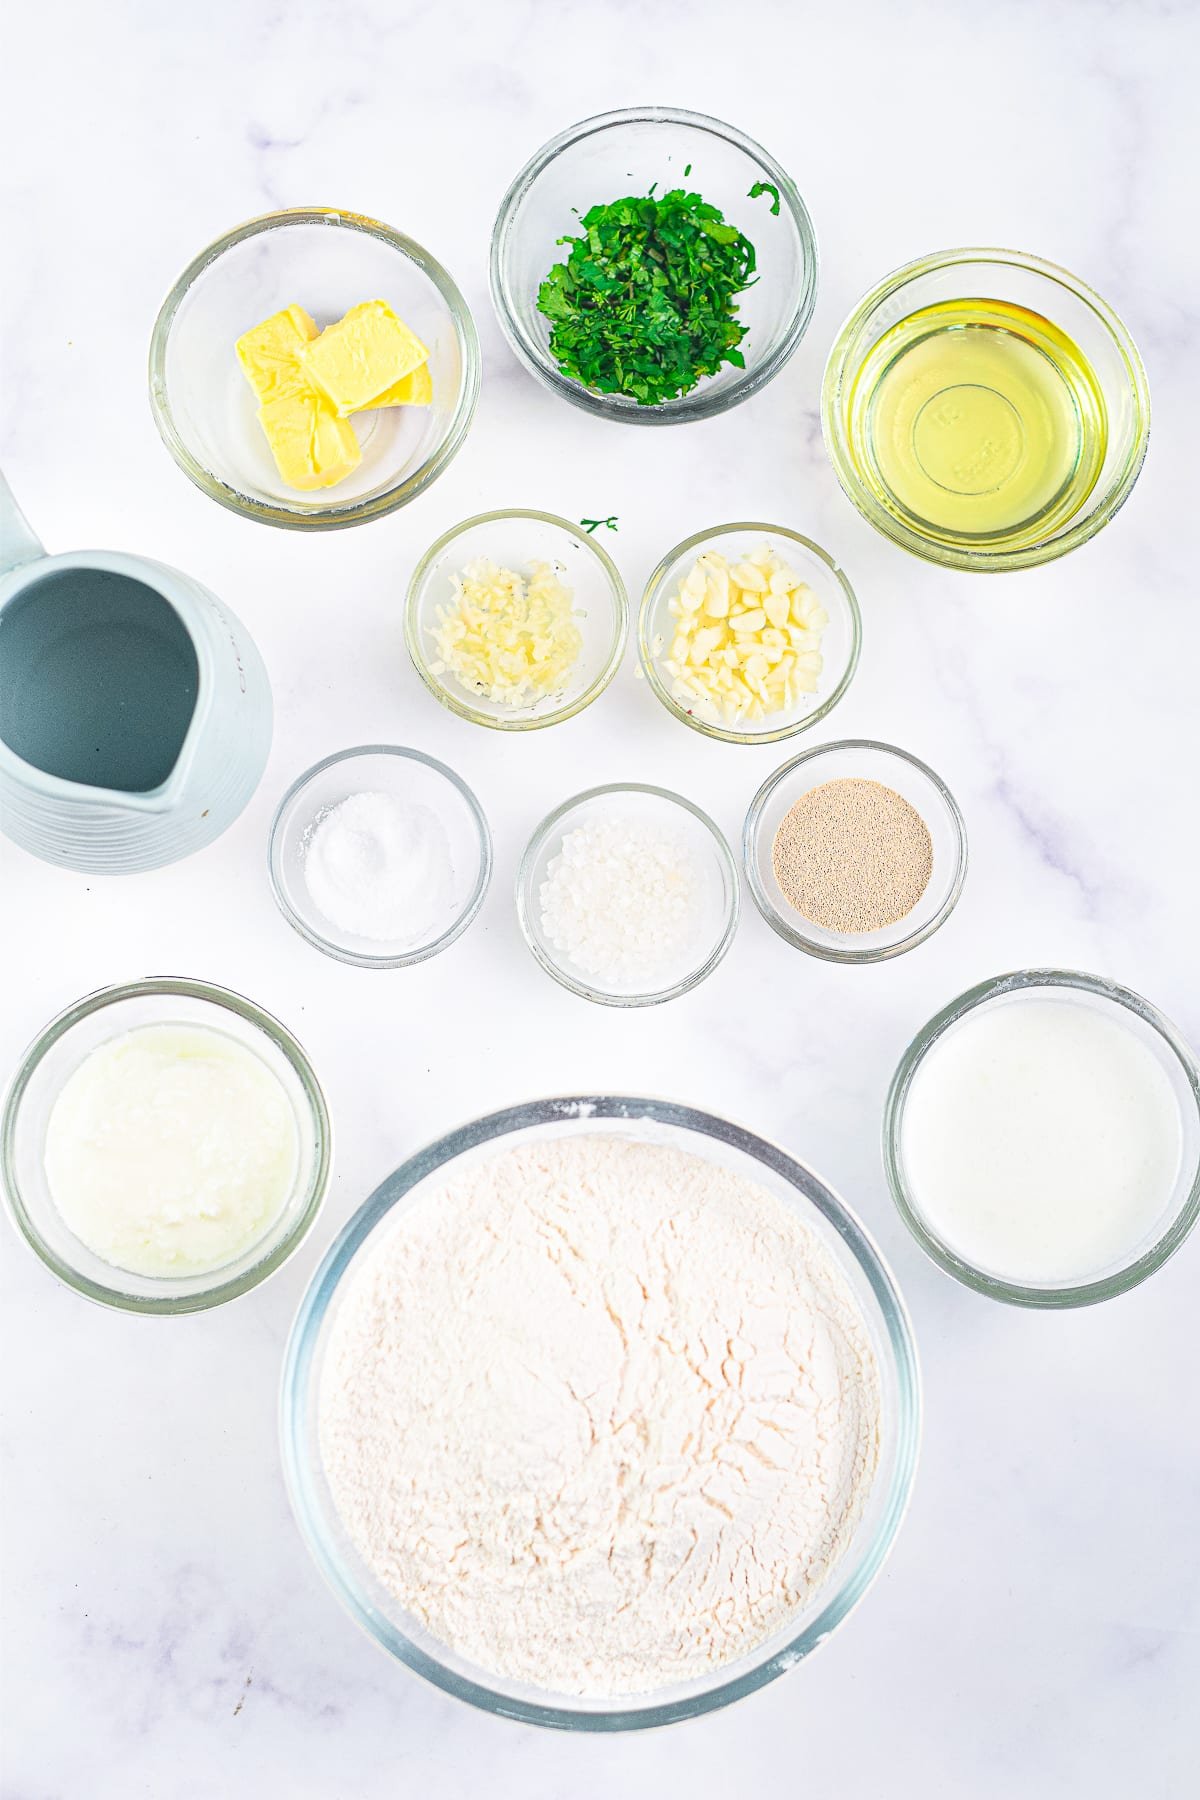 ingredients needed to make air fryer naan